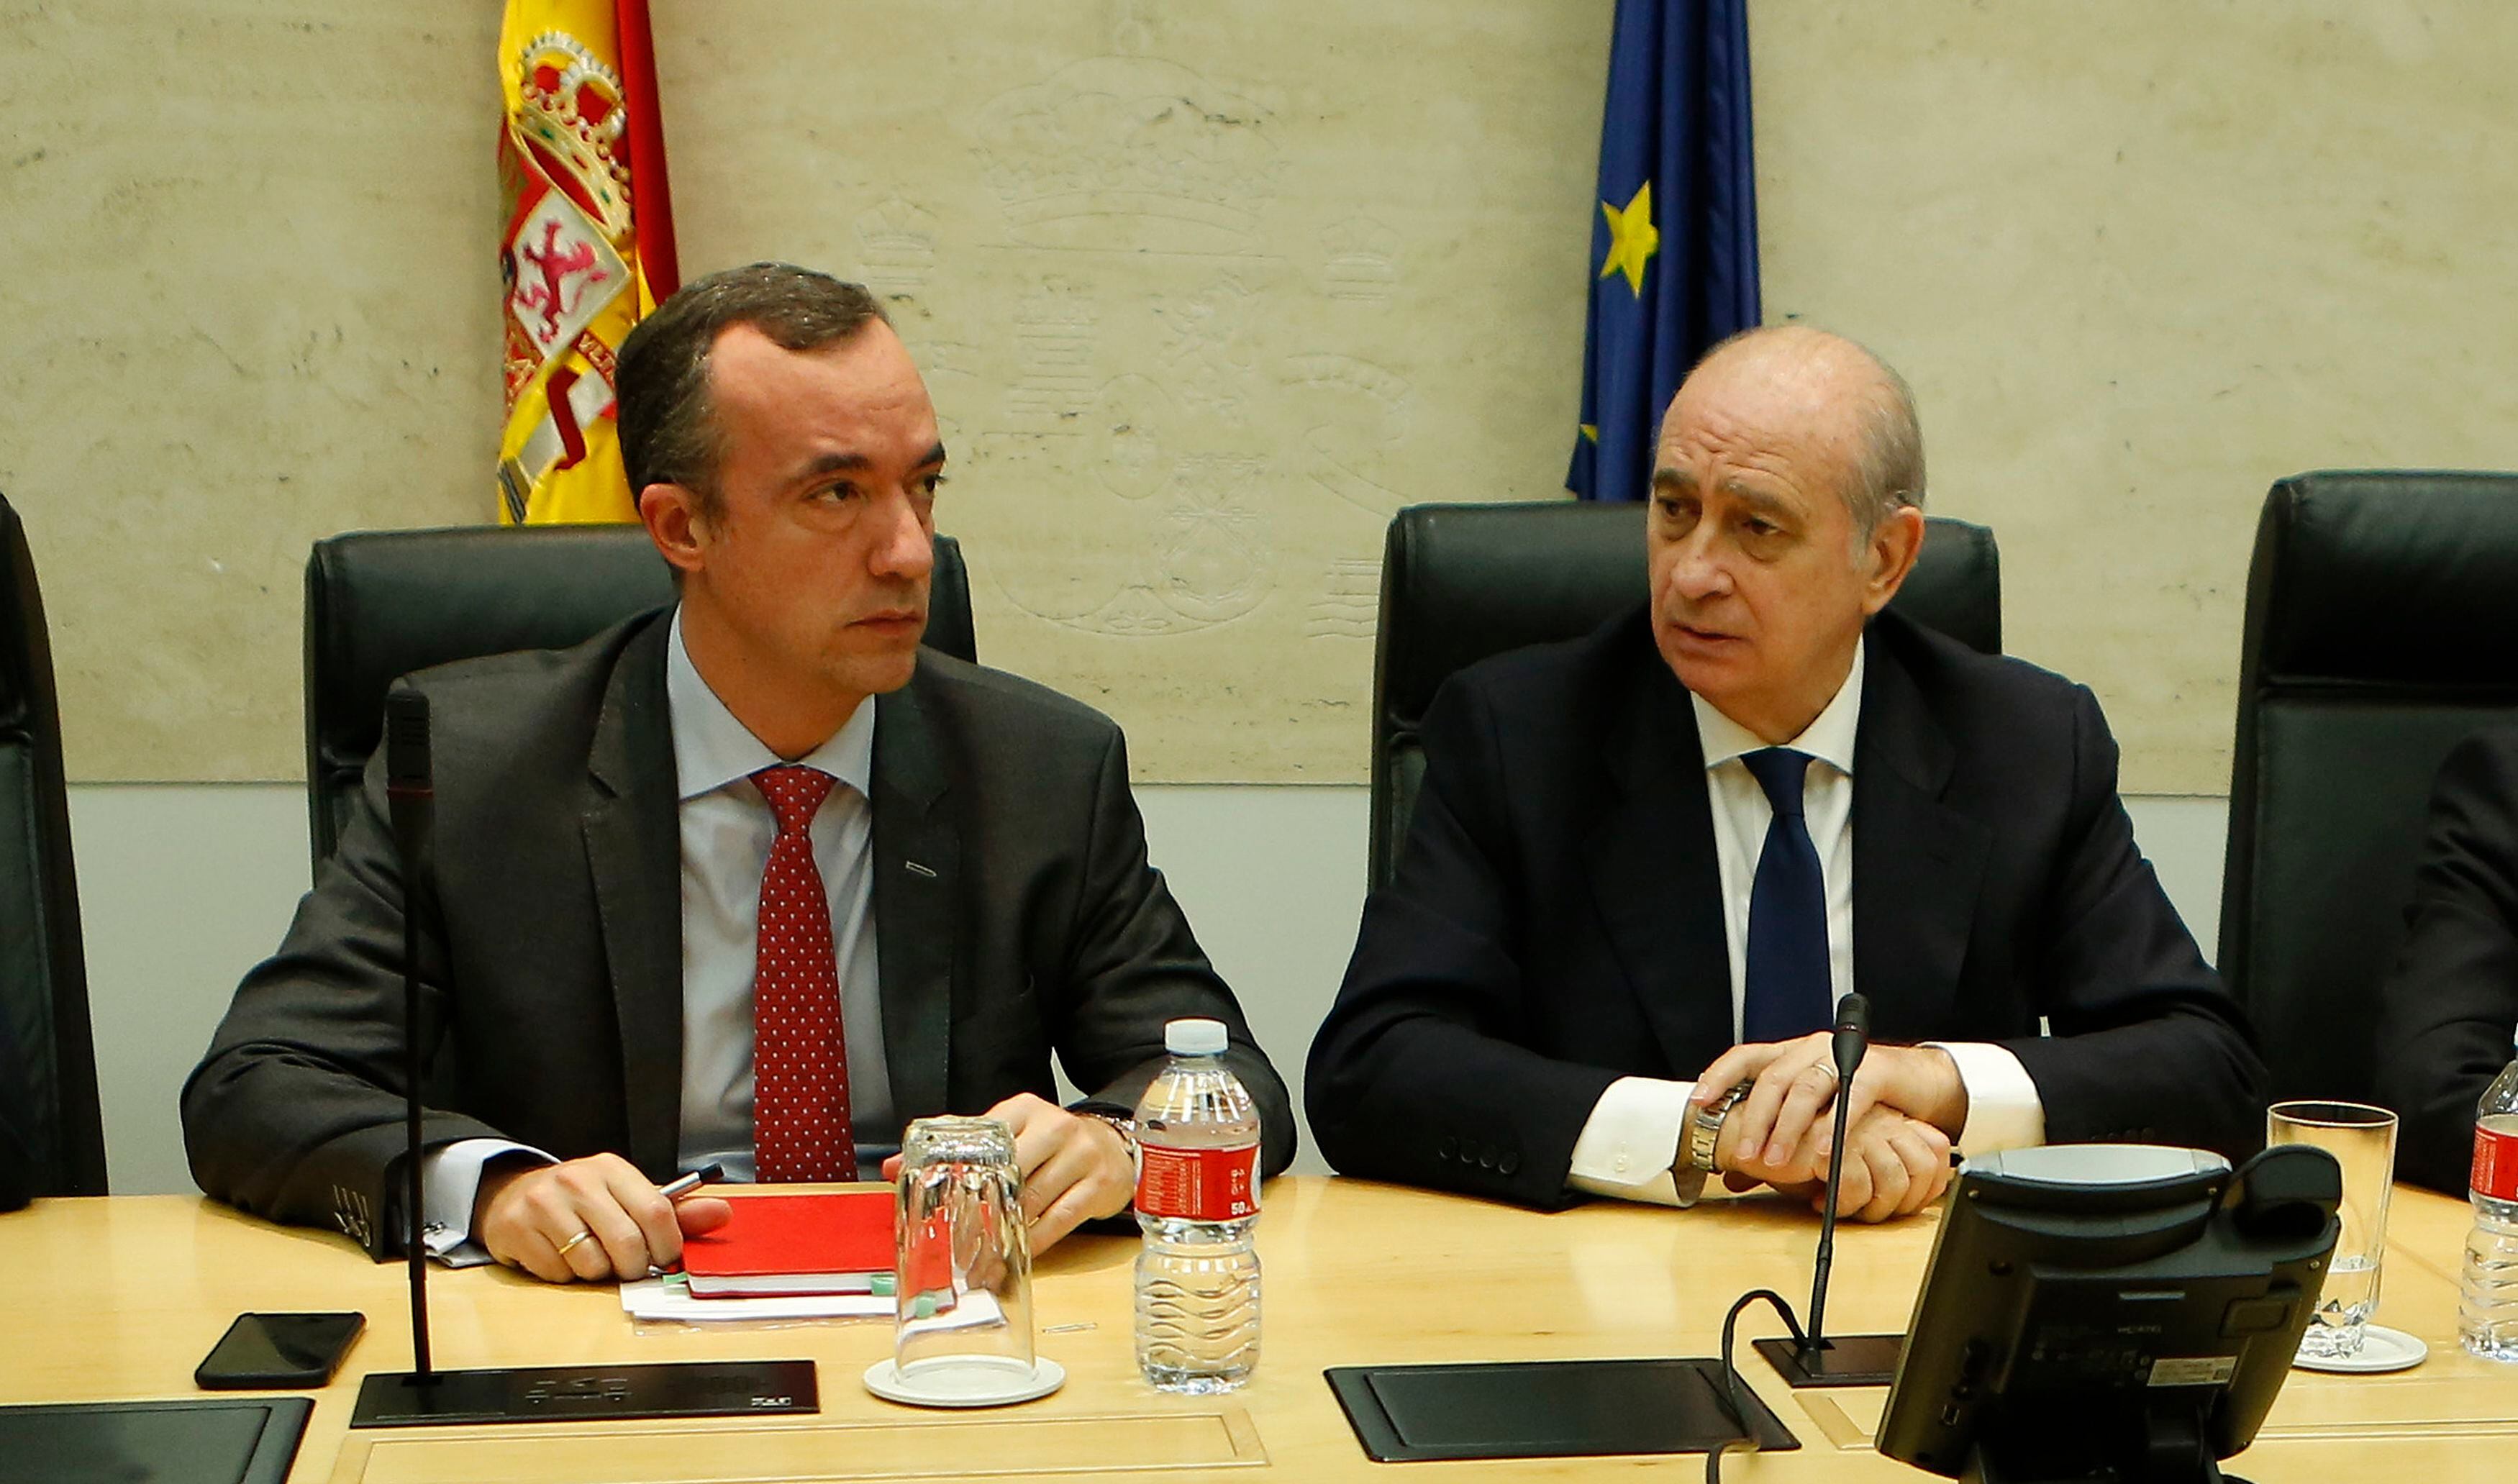 El exsecretario de Estado de Seguridad Francisco Martínez y el exministro de Interior Jorge Fernandez Díaz, durante una reunión durante su etapa en el ministerio, en marzo de 2016.  